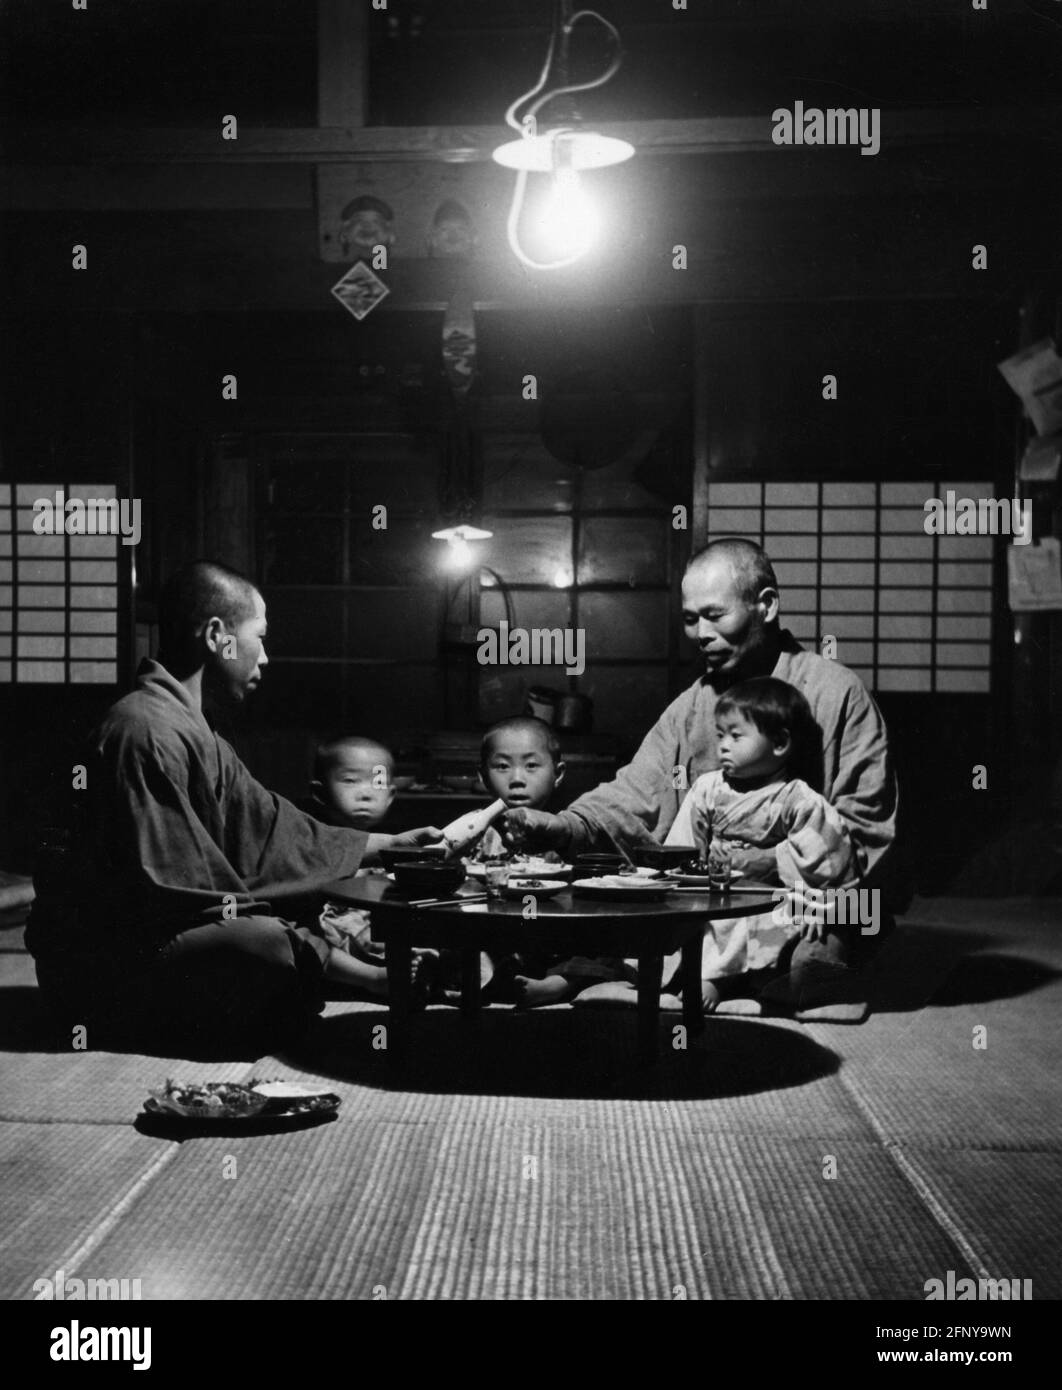 Geographie / Reisen, Japan, Menschen, japanischer Bauer mit Kindern, sitzend um den Tisch, 60er Jahre, ZUSÄTZLICHE-RIGHTS-CLEARANCE-INFO-NOT-AVAILABLE Stockfoto